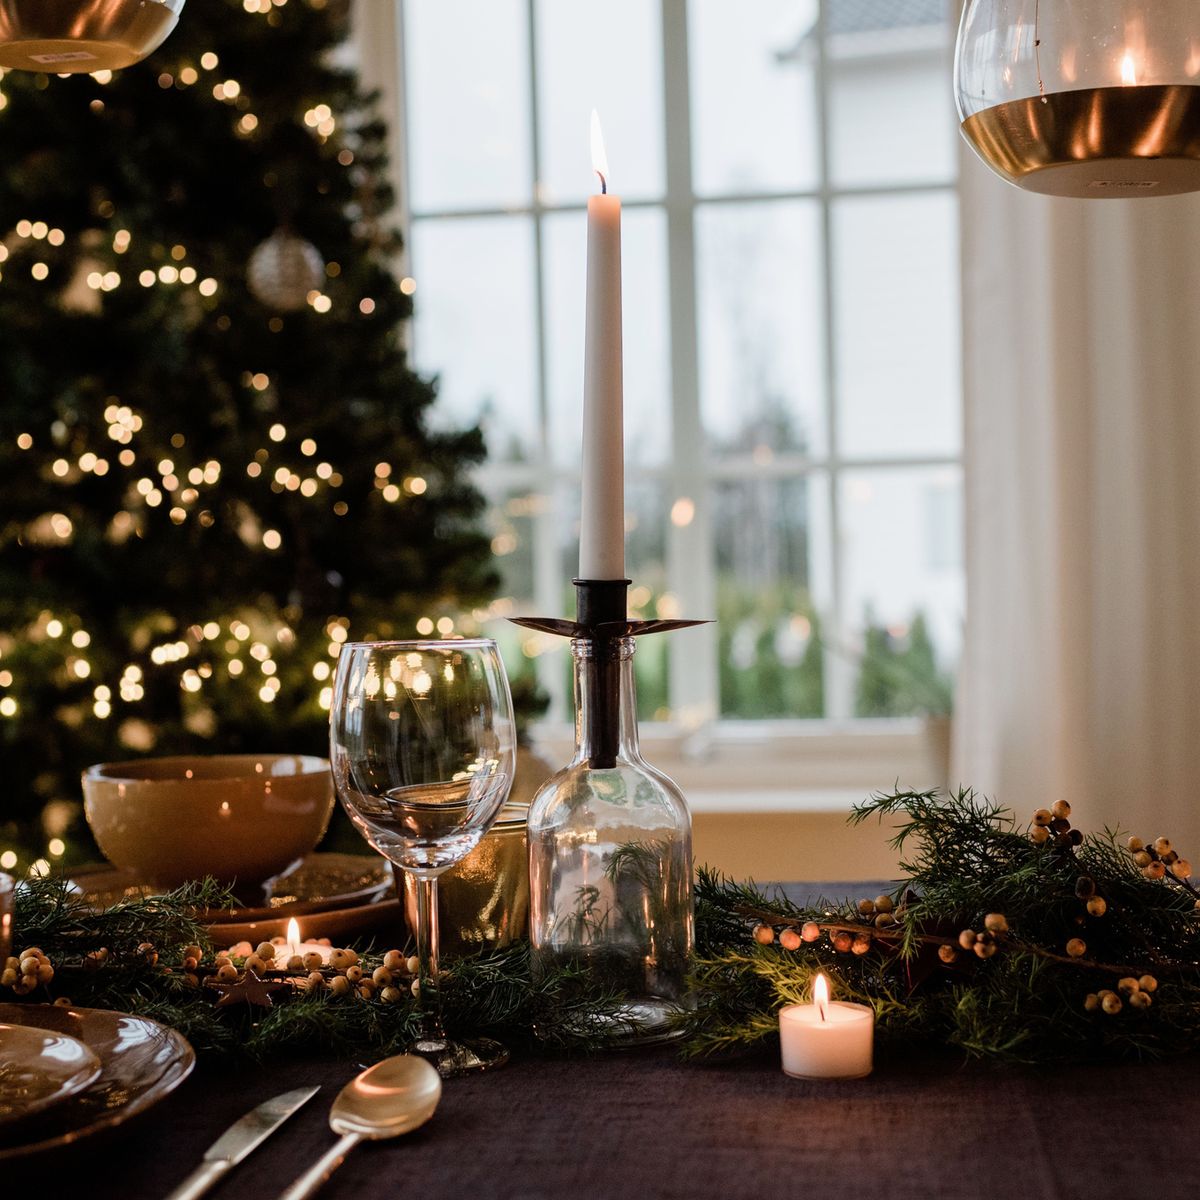 cijfer partitie Chaise longue Met déze items haal je de ultieme kerstsfeer in huis (ja, ook zonder boom)